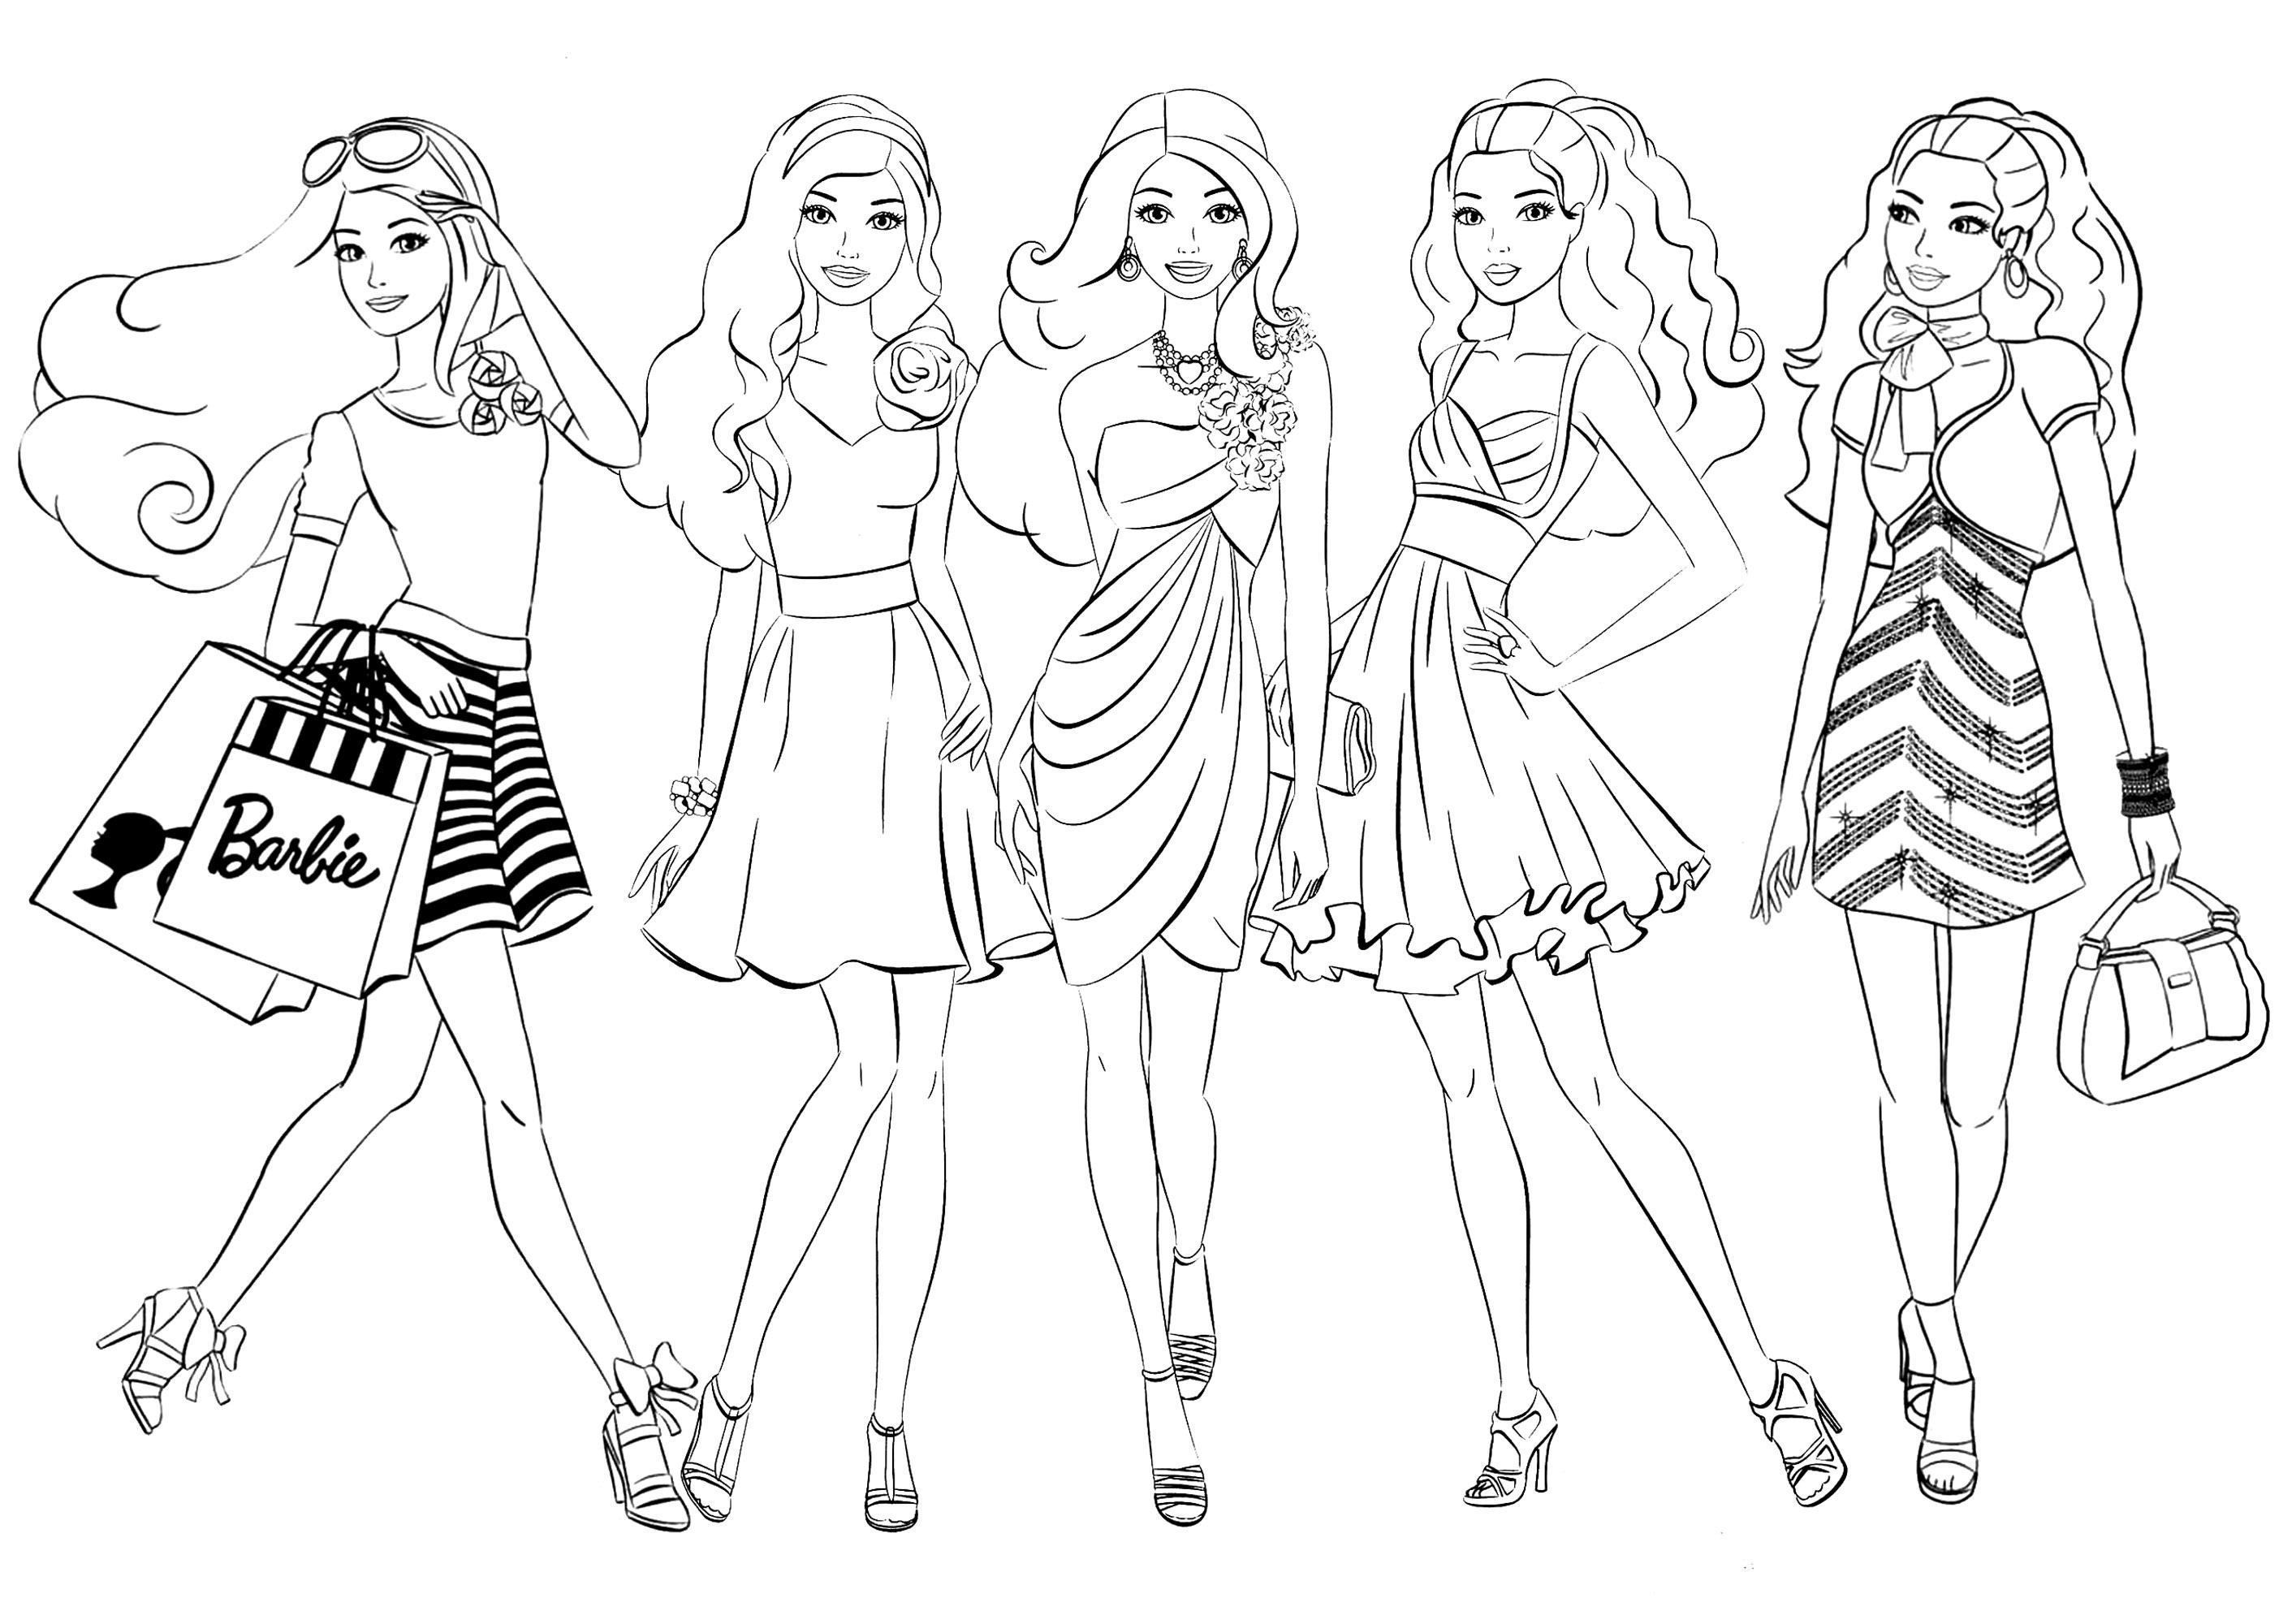 Cinque bambole Barbie. Questa pagina da colorare presenta cinque personaggi ispirati alle bambole Barbie, con abiti diversi da colorare a piacere.